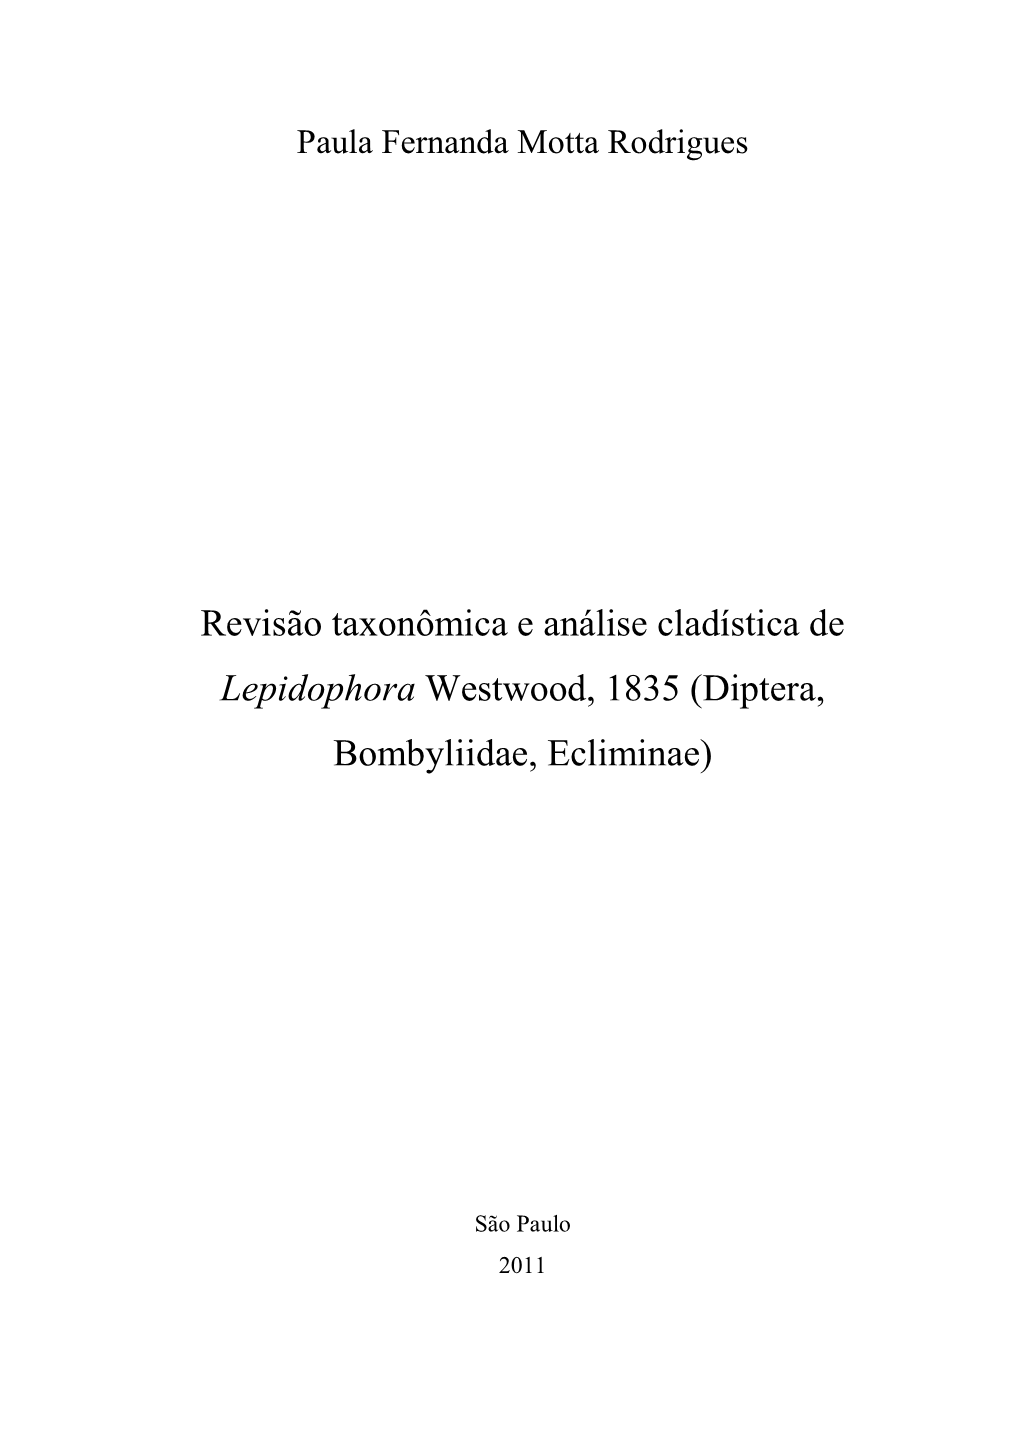 Revisão Taxonômica E Análise Cladística De Lepidophora Westwood, 1835 (Diptera, Bombyliidae, Ecliminae)